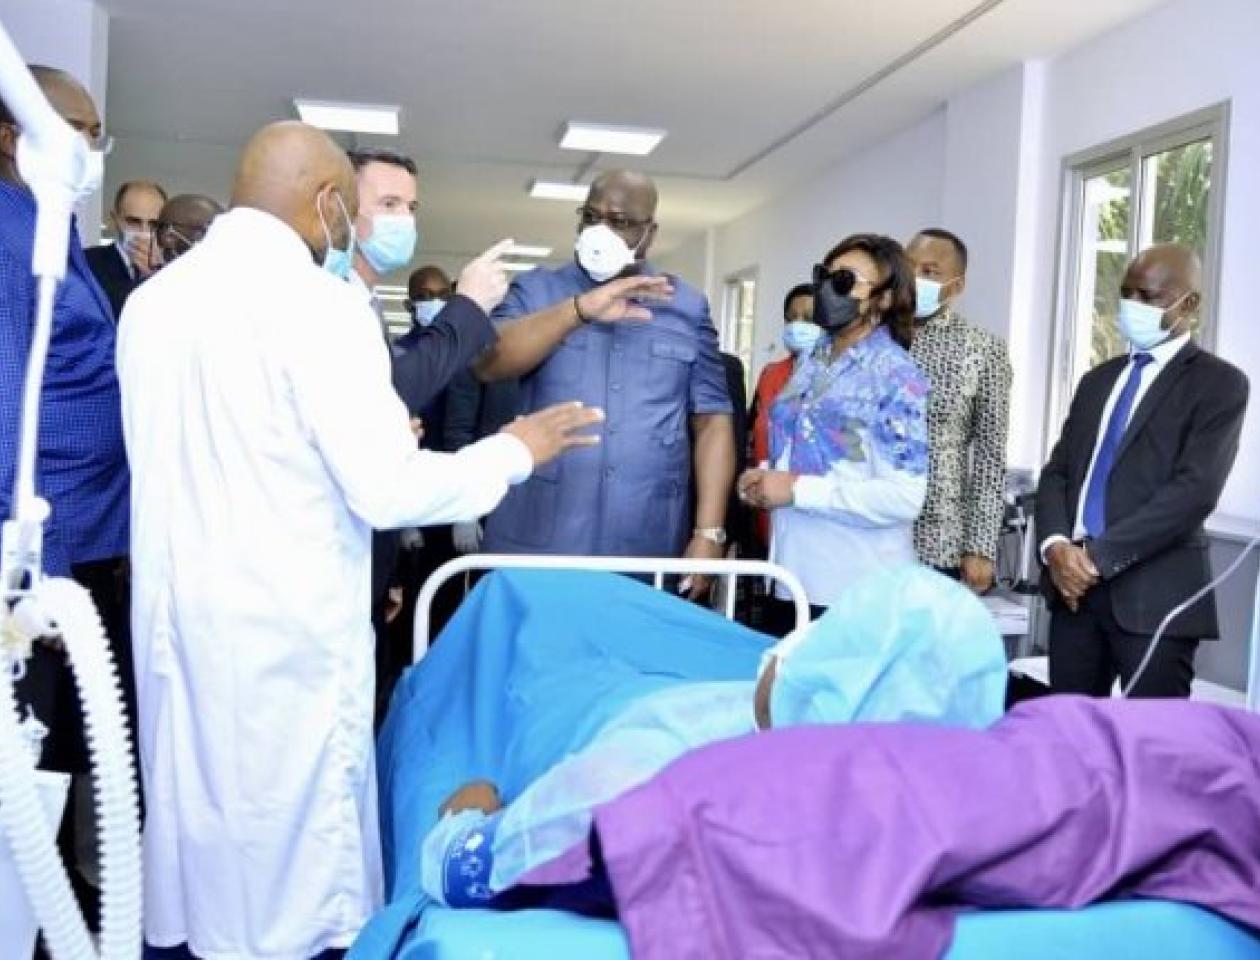 Le couple Tshisekedi lors d'une visite dans un hôpital à Kinshasa